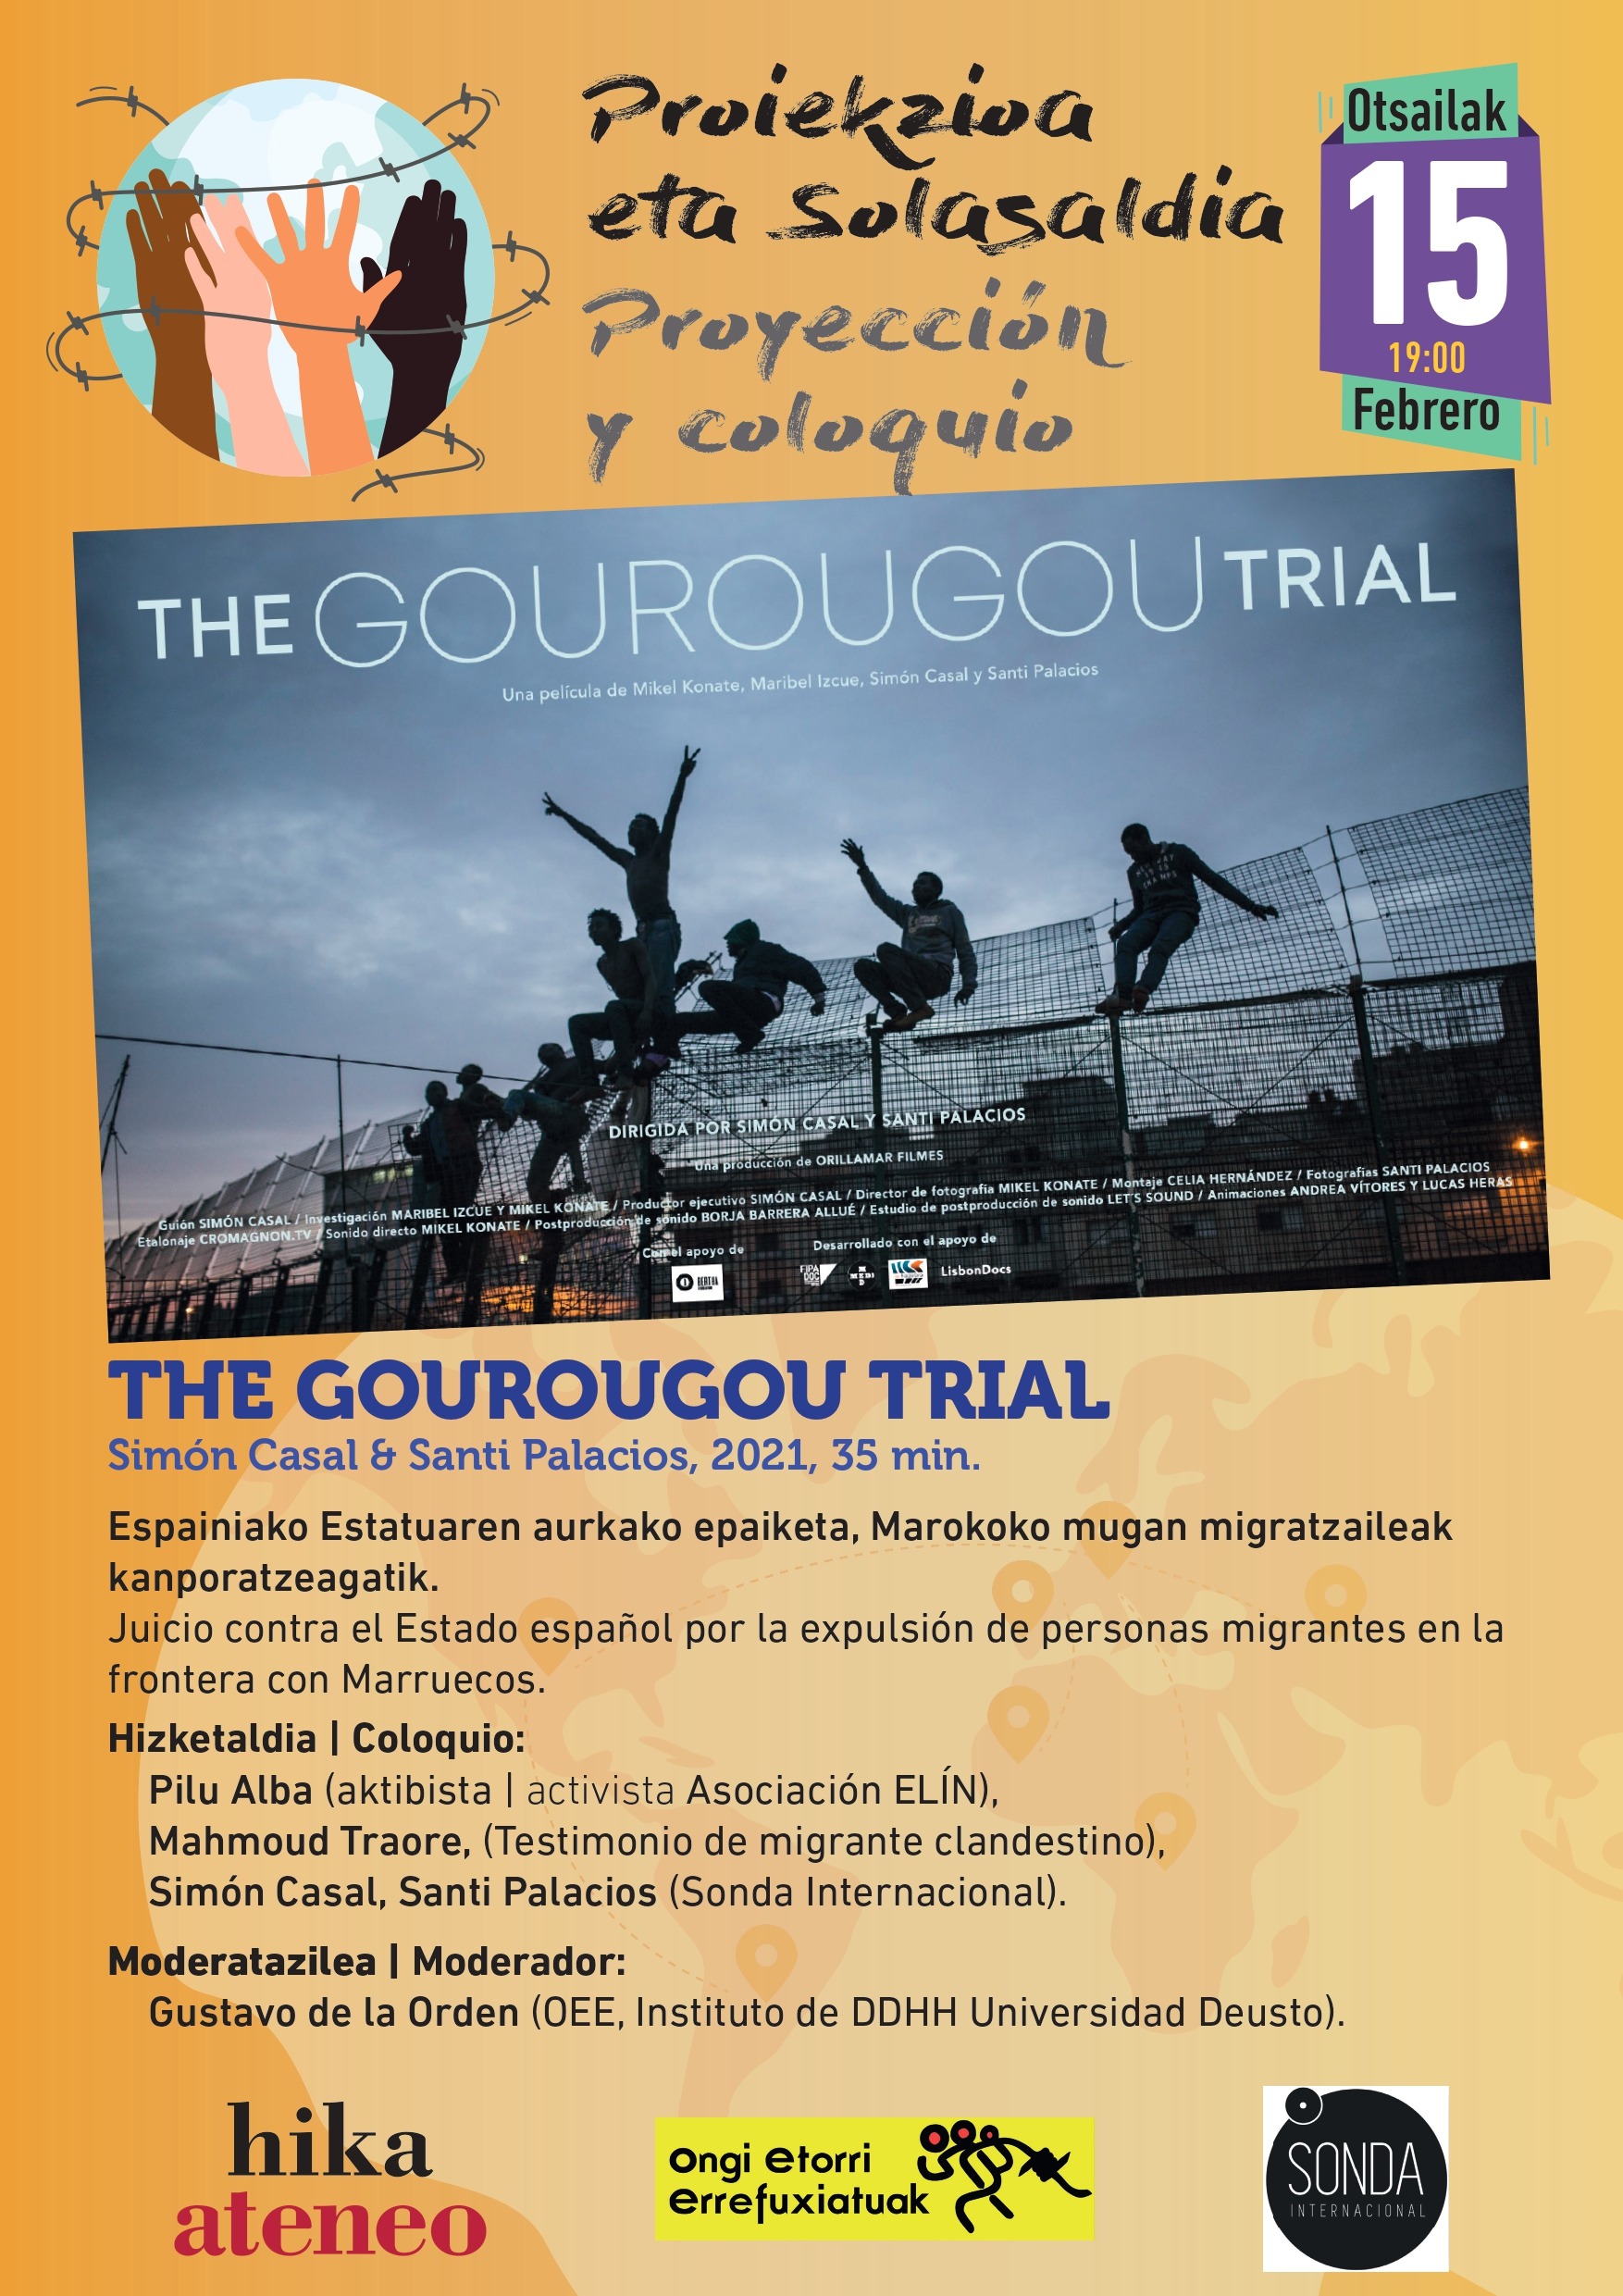 ONGI ETORRI ZINEMA «The Gourougou trial» – hika ateneo